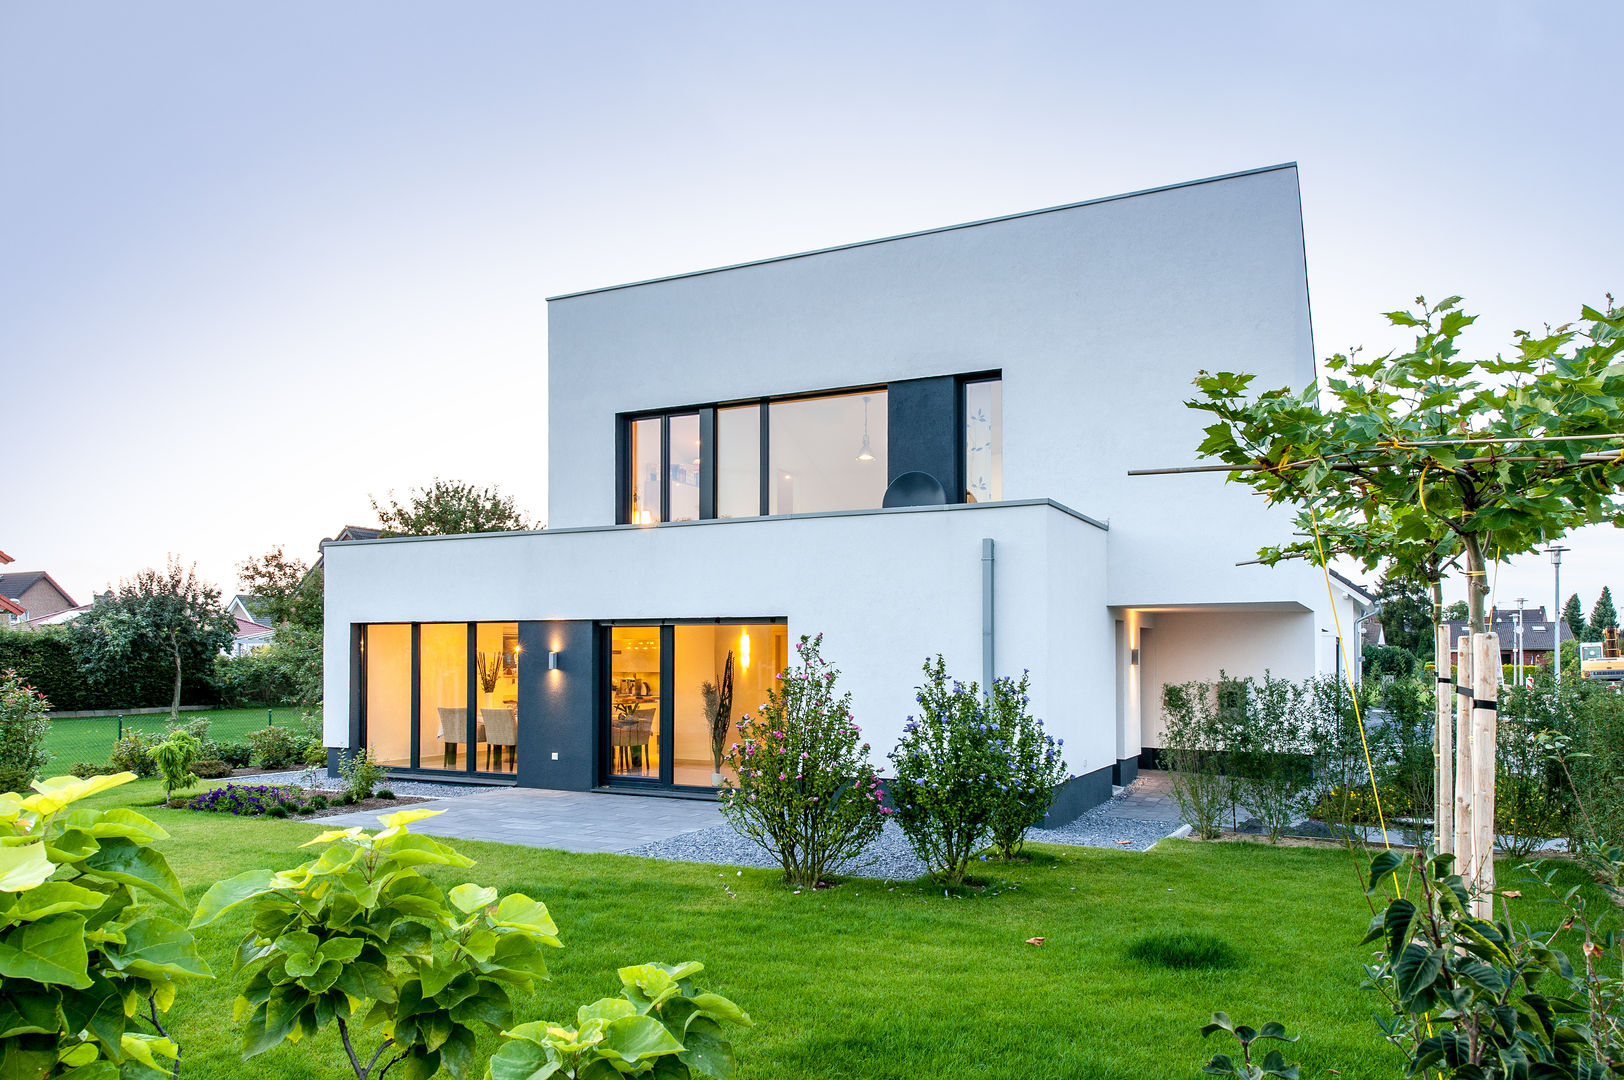 Haus E - Passivhaus des Jahres 2012 (im Auftrag Sommer Passivhaus GmbH), Architektur Jansen Architektur Jansen Minimalist houses